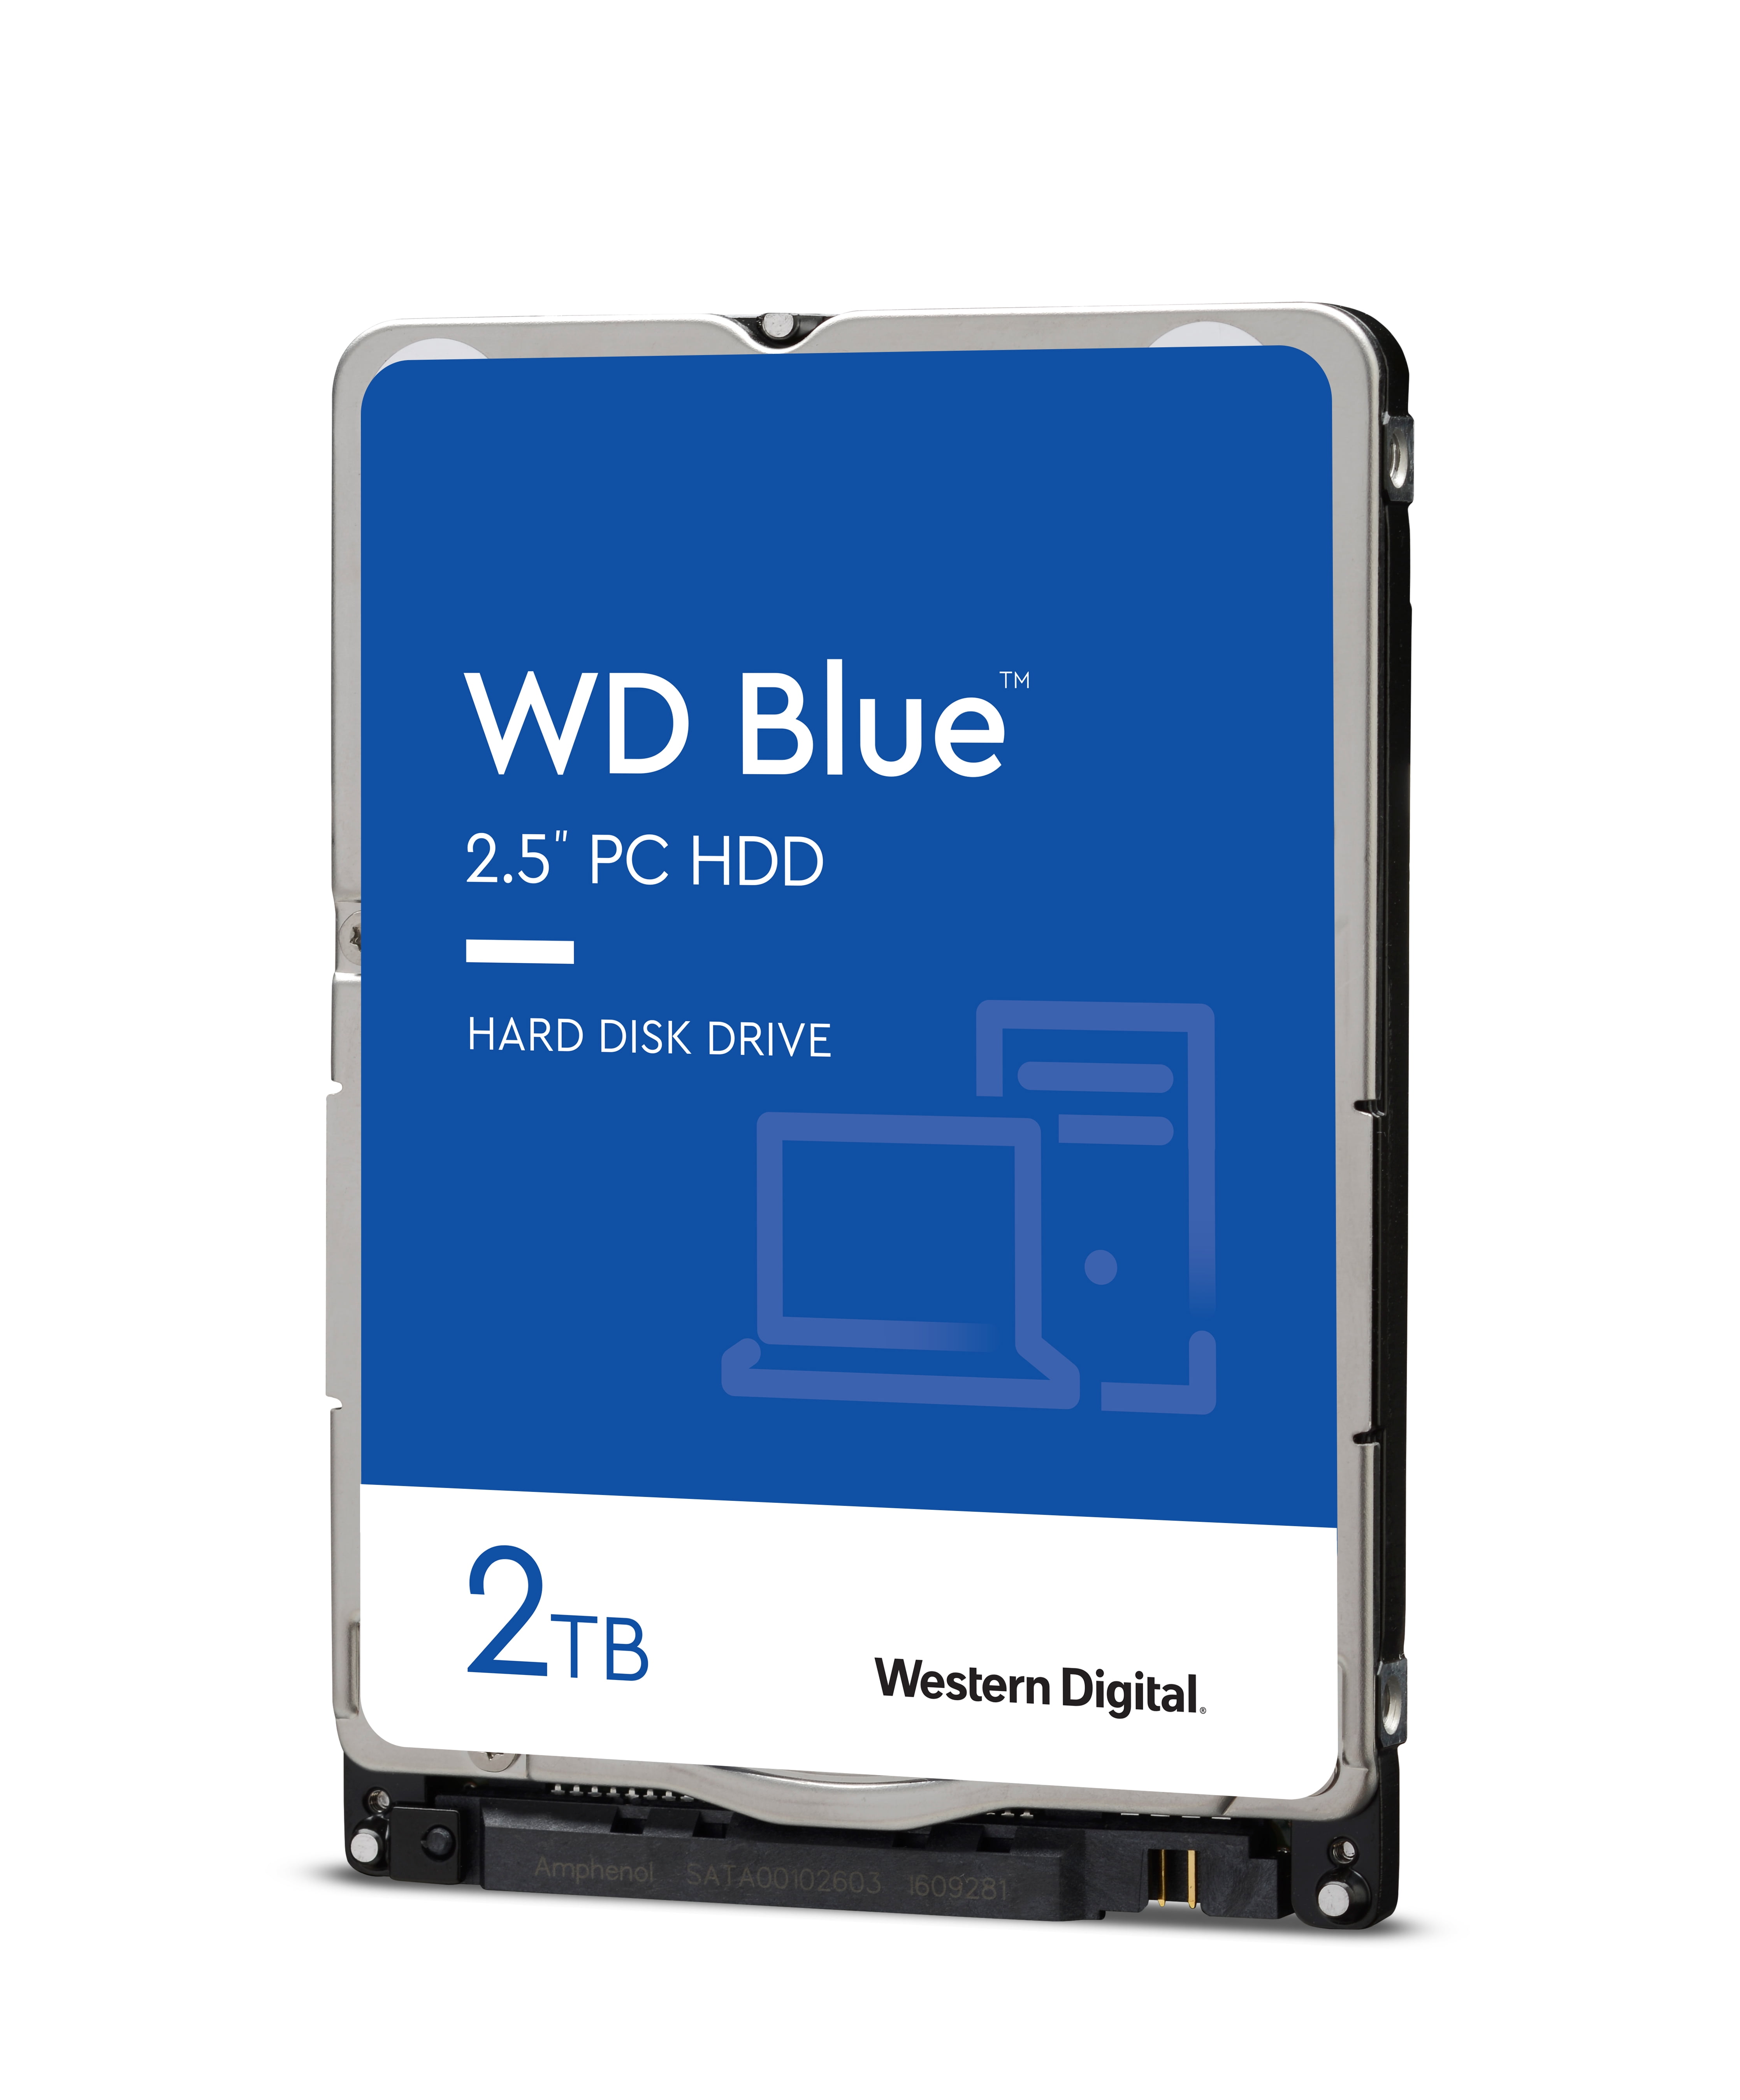 Western Digital 2TB WD Blue Internal Hard Drive - 5400 RPM, SATA 6 Gb/s, 128 MB Cache, 2.5" HDD - WD20SPZX